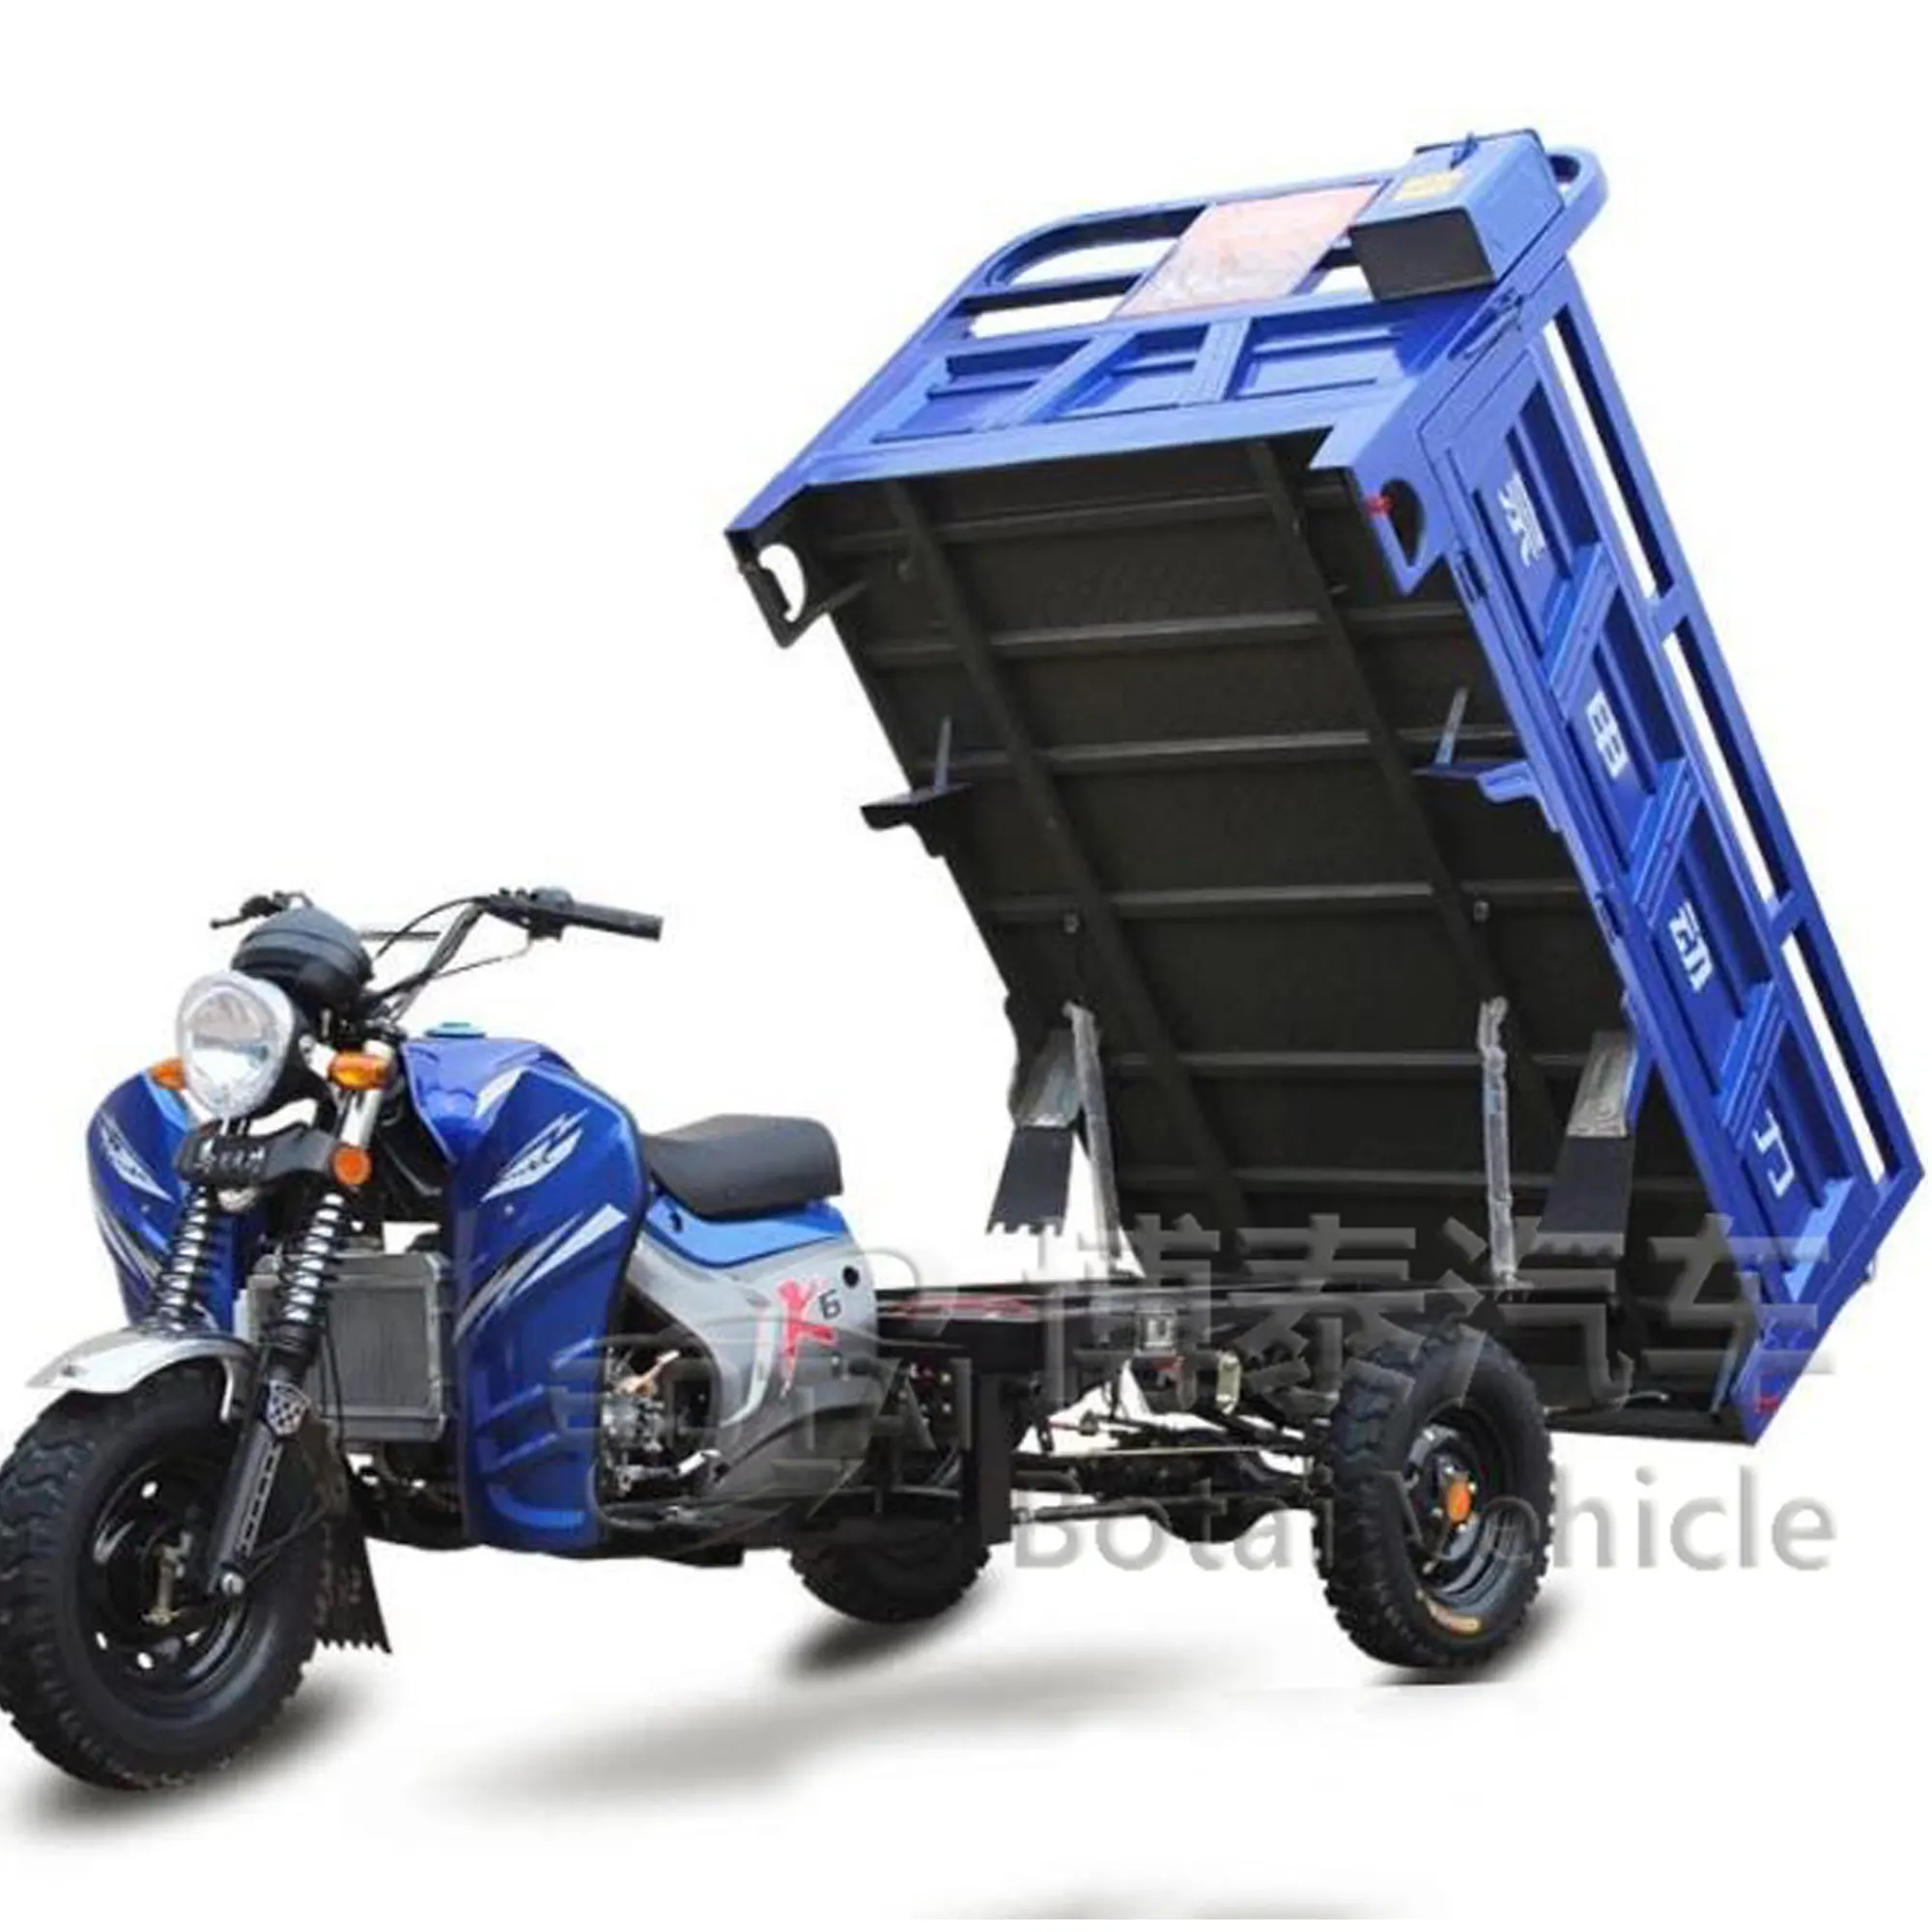 Ausland Schlussverkauf kundenspezifische offene Kabine starke Kletterfähigkeit MotorradLkw 3-Rad-Ladung Dreirad Motorrad